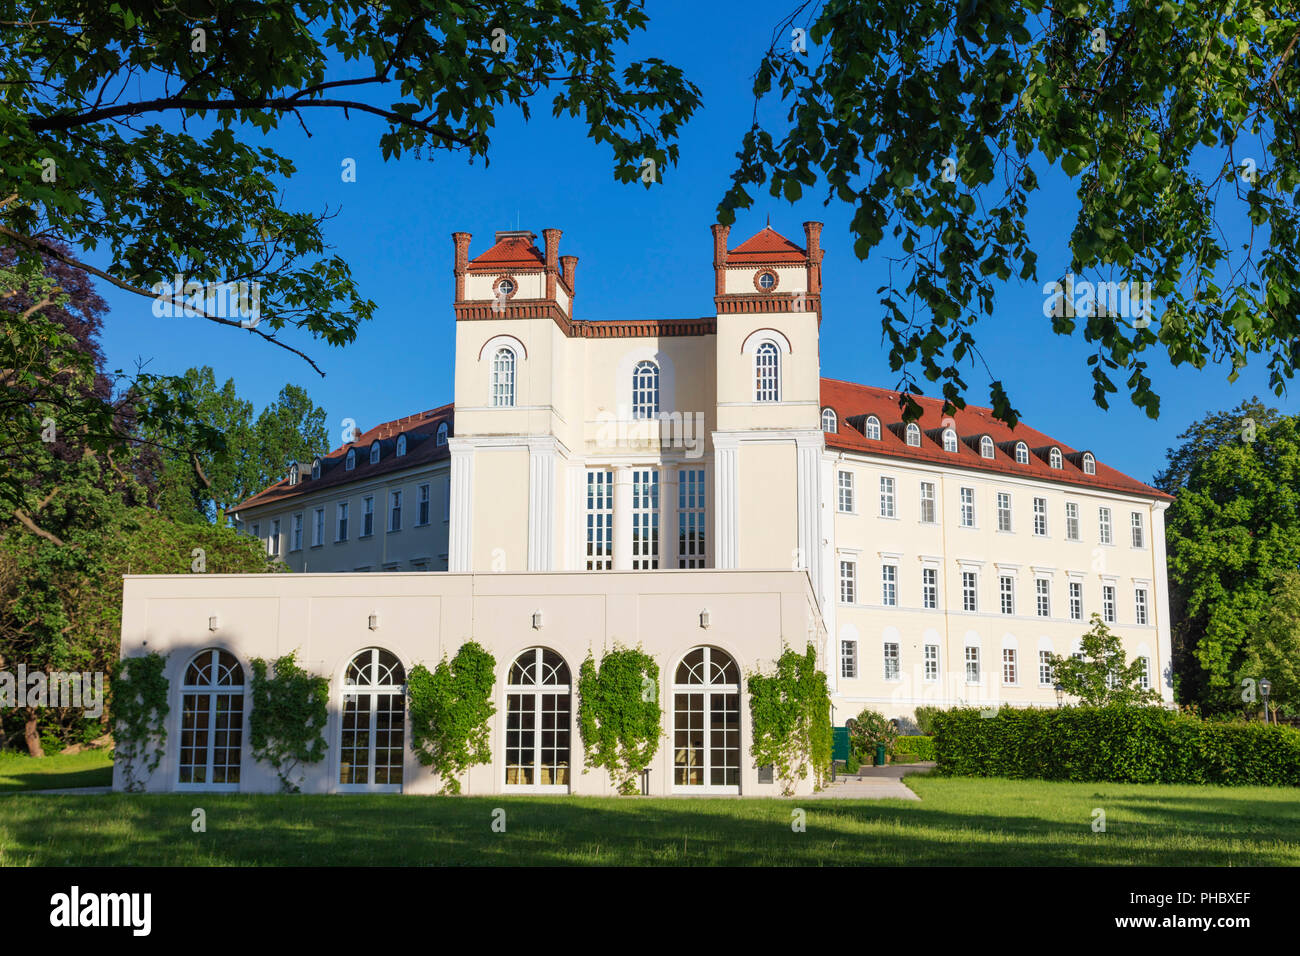 Schloss Lubbenau, Site de la biosphère de l'UNESCO, Spreewald, Brandebourg, Allemagne, Europe Banque D'Images